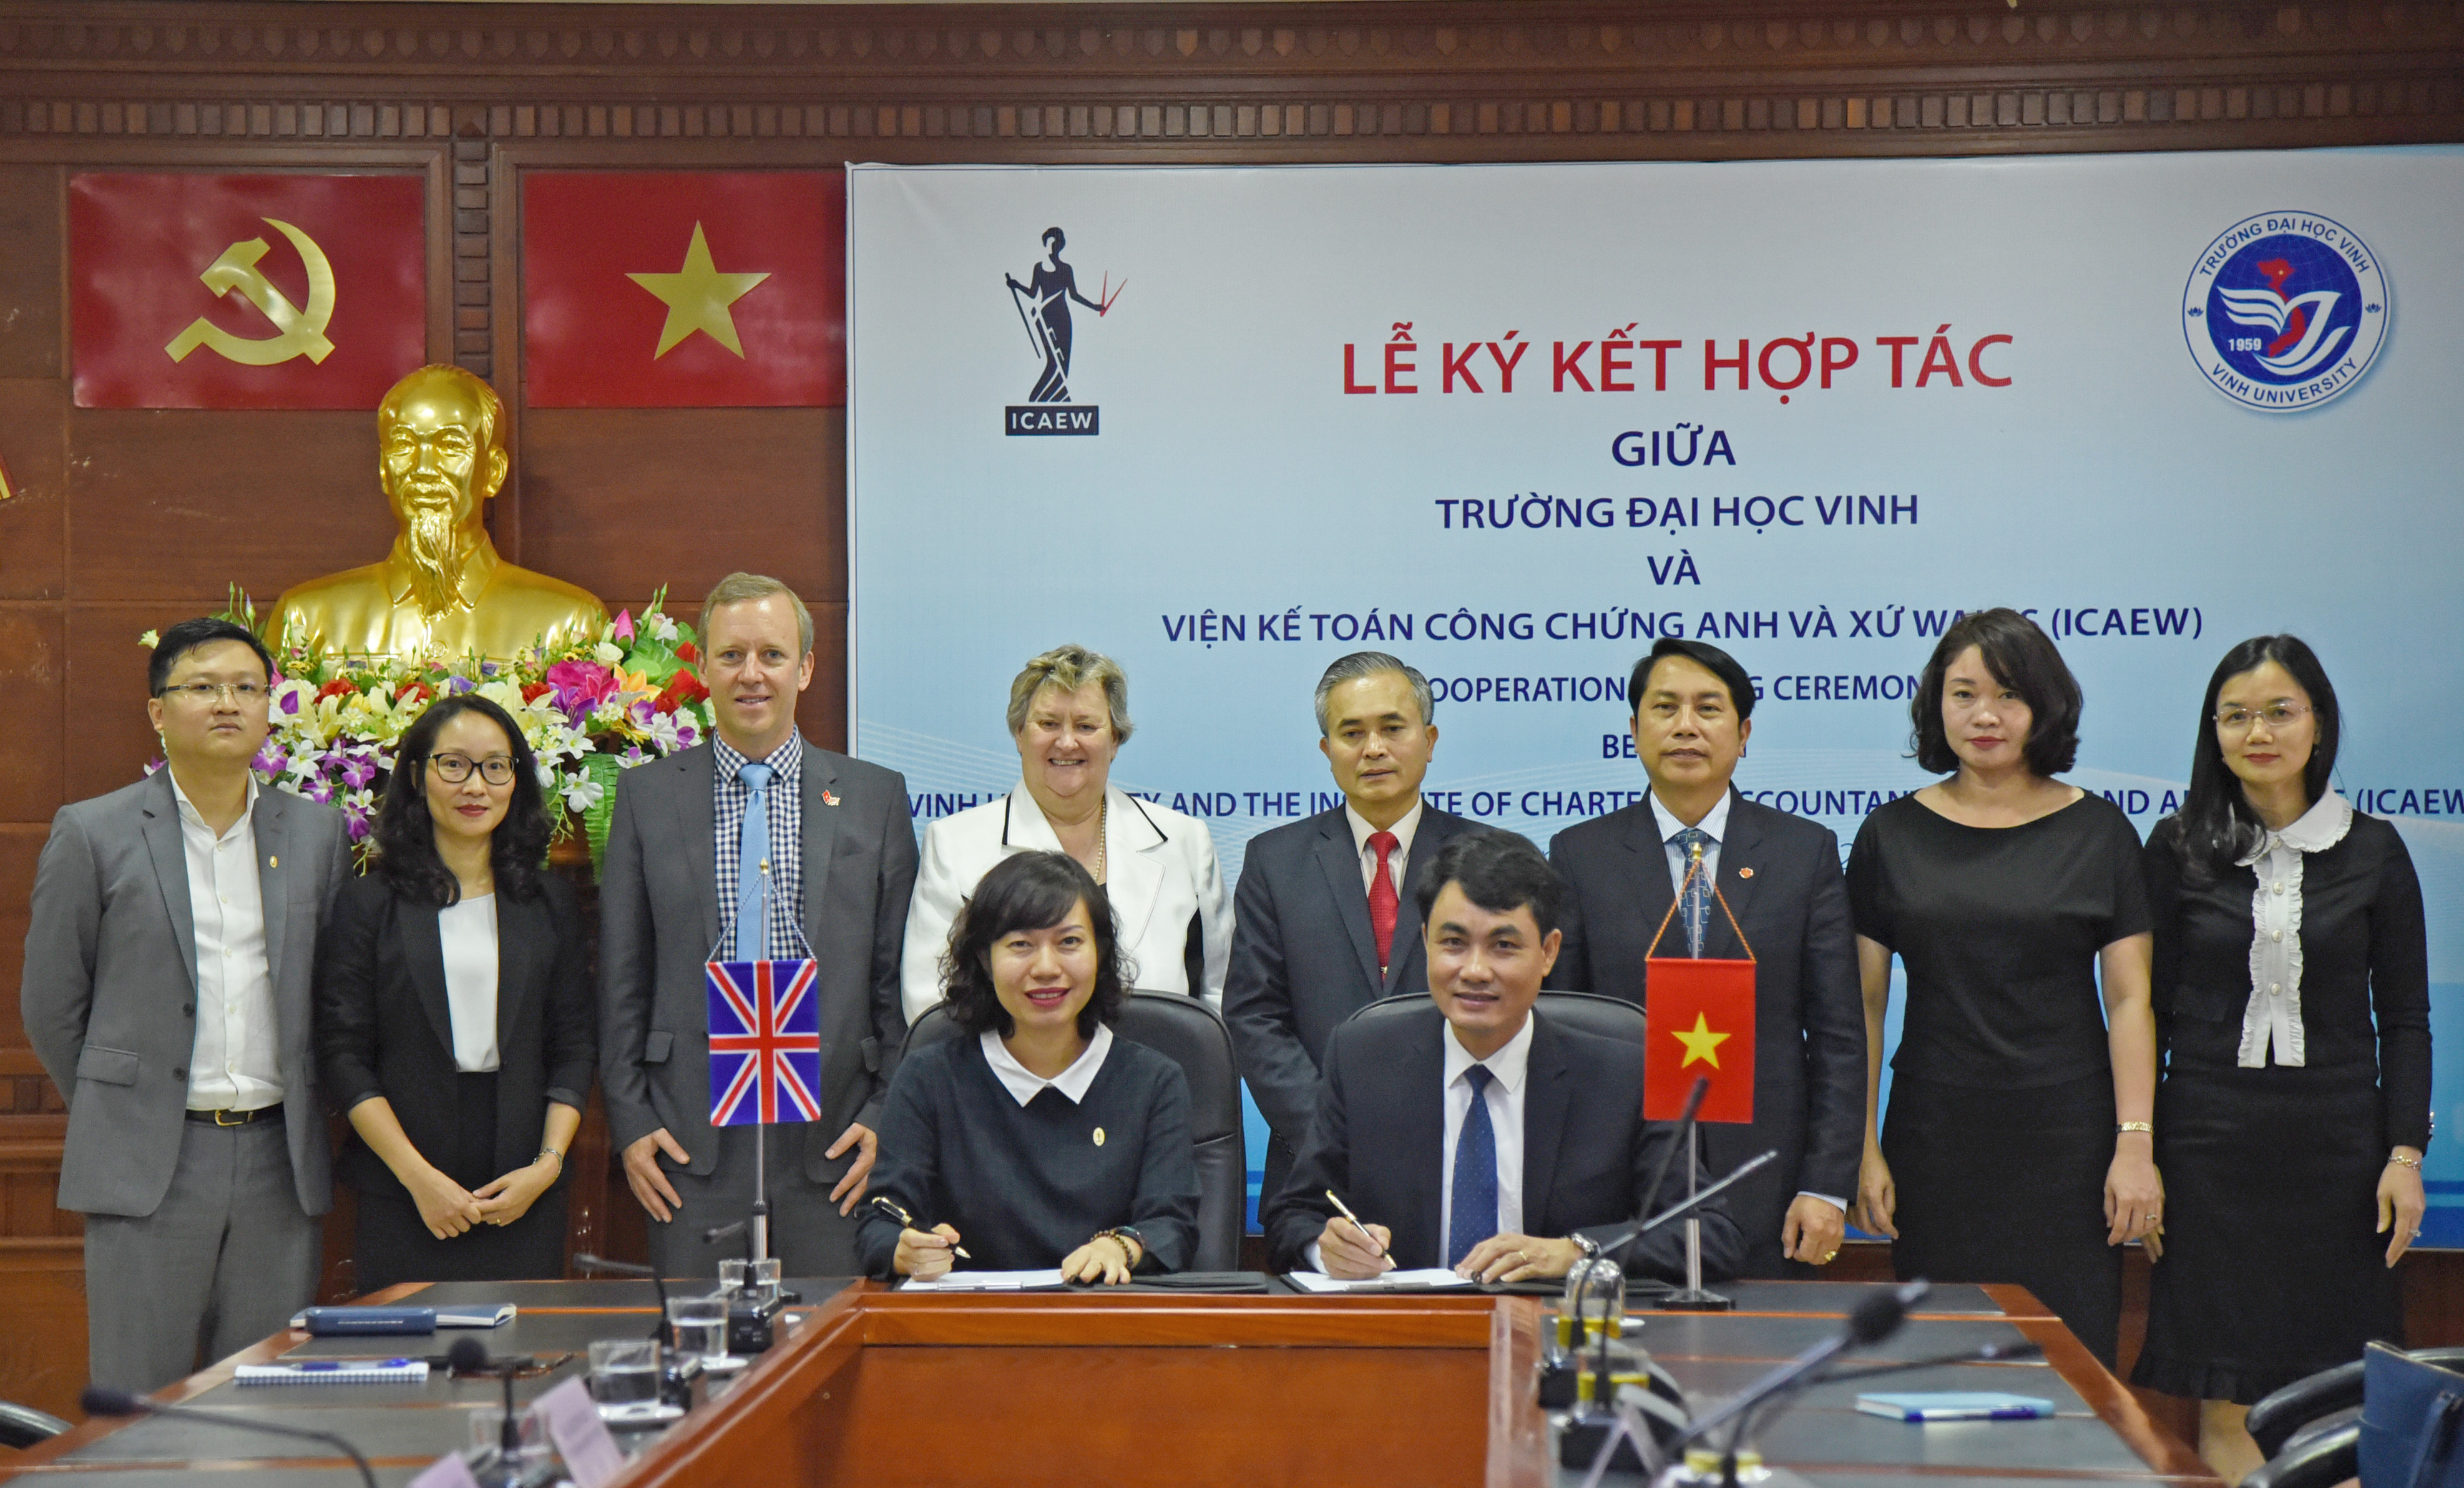 Thứ trưởng Bộ Ngoại giao Anh và lãnh đạo tỉnh Nghệ An chứng kiến ICAEW và trường Đại học Vinh ký kết hợp tác. Ảnh: Thu Giang